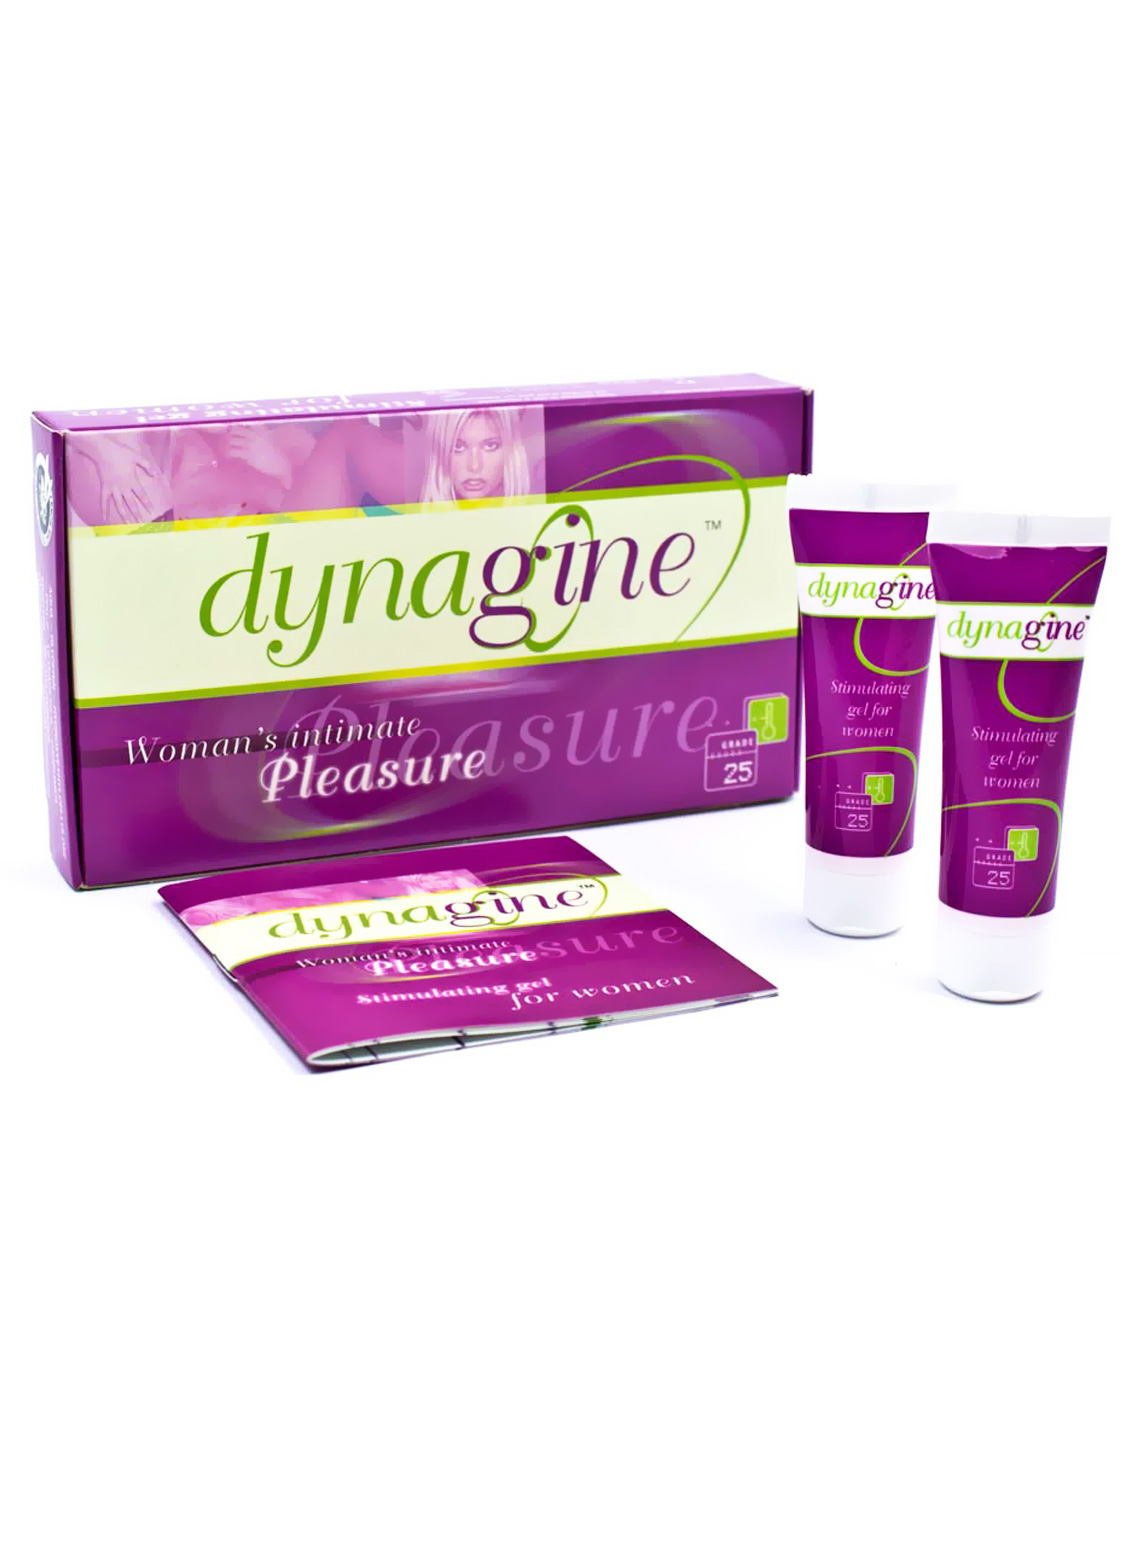 Dynagine Stimulating Gel For Women